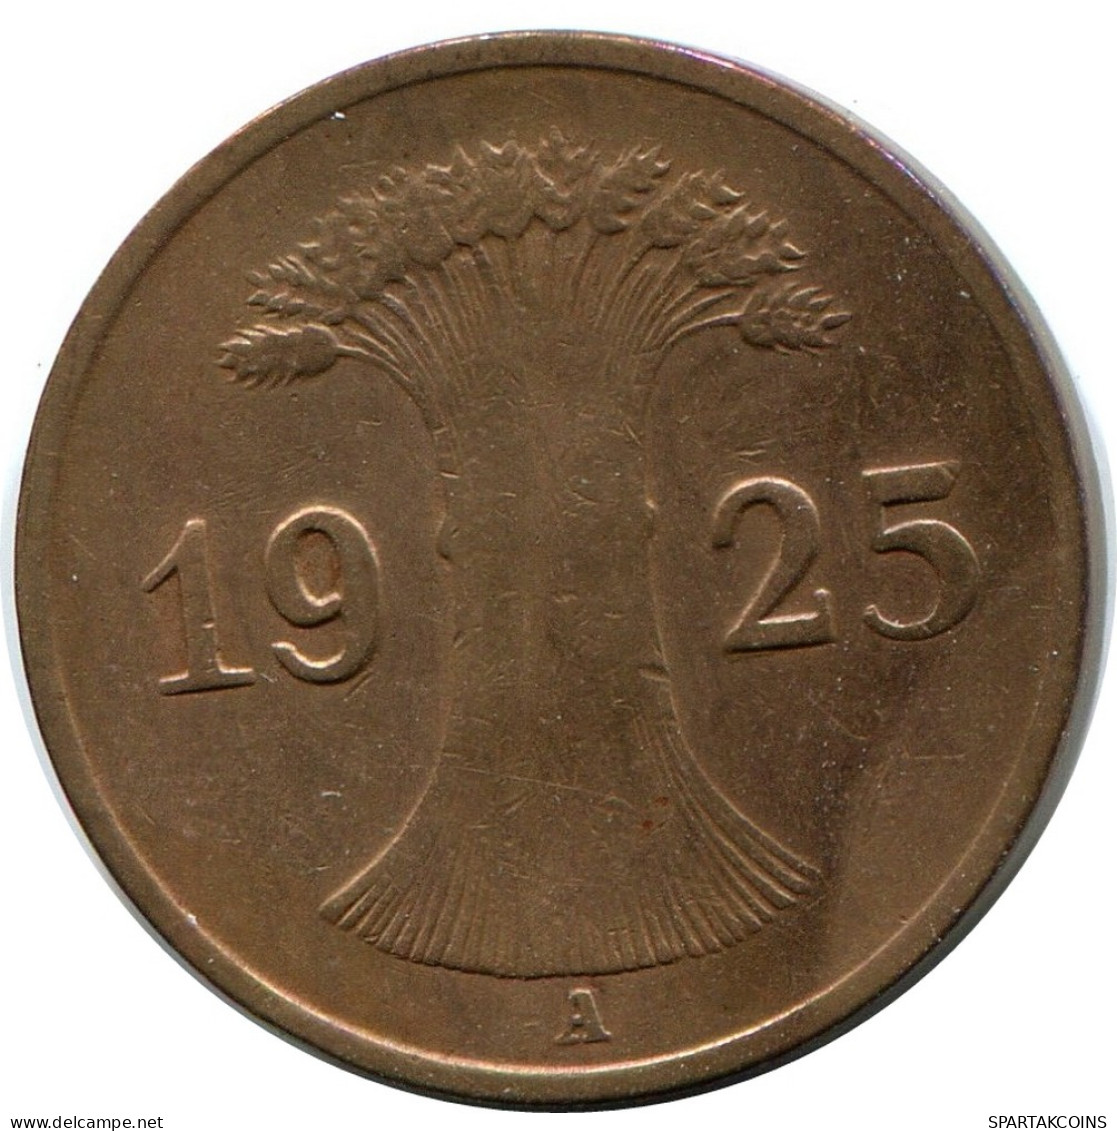 1 REICHSPFENNIG 1925 A GERMANY Coin #DB774.U - 1 Renten- & 1 Reichspfennig